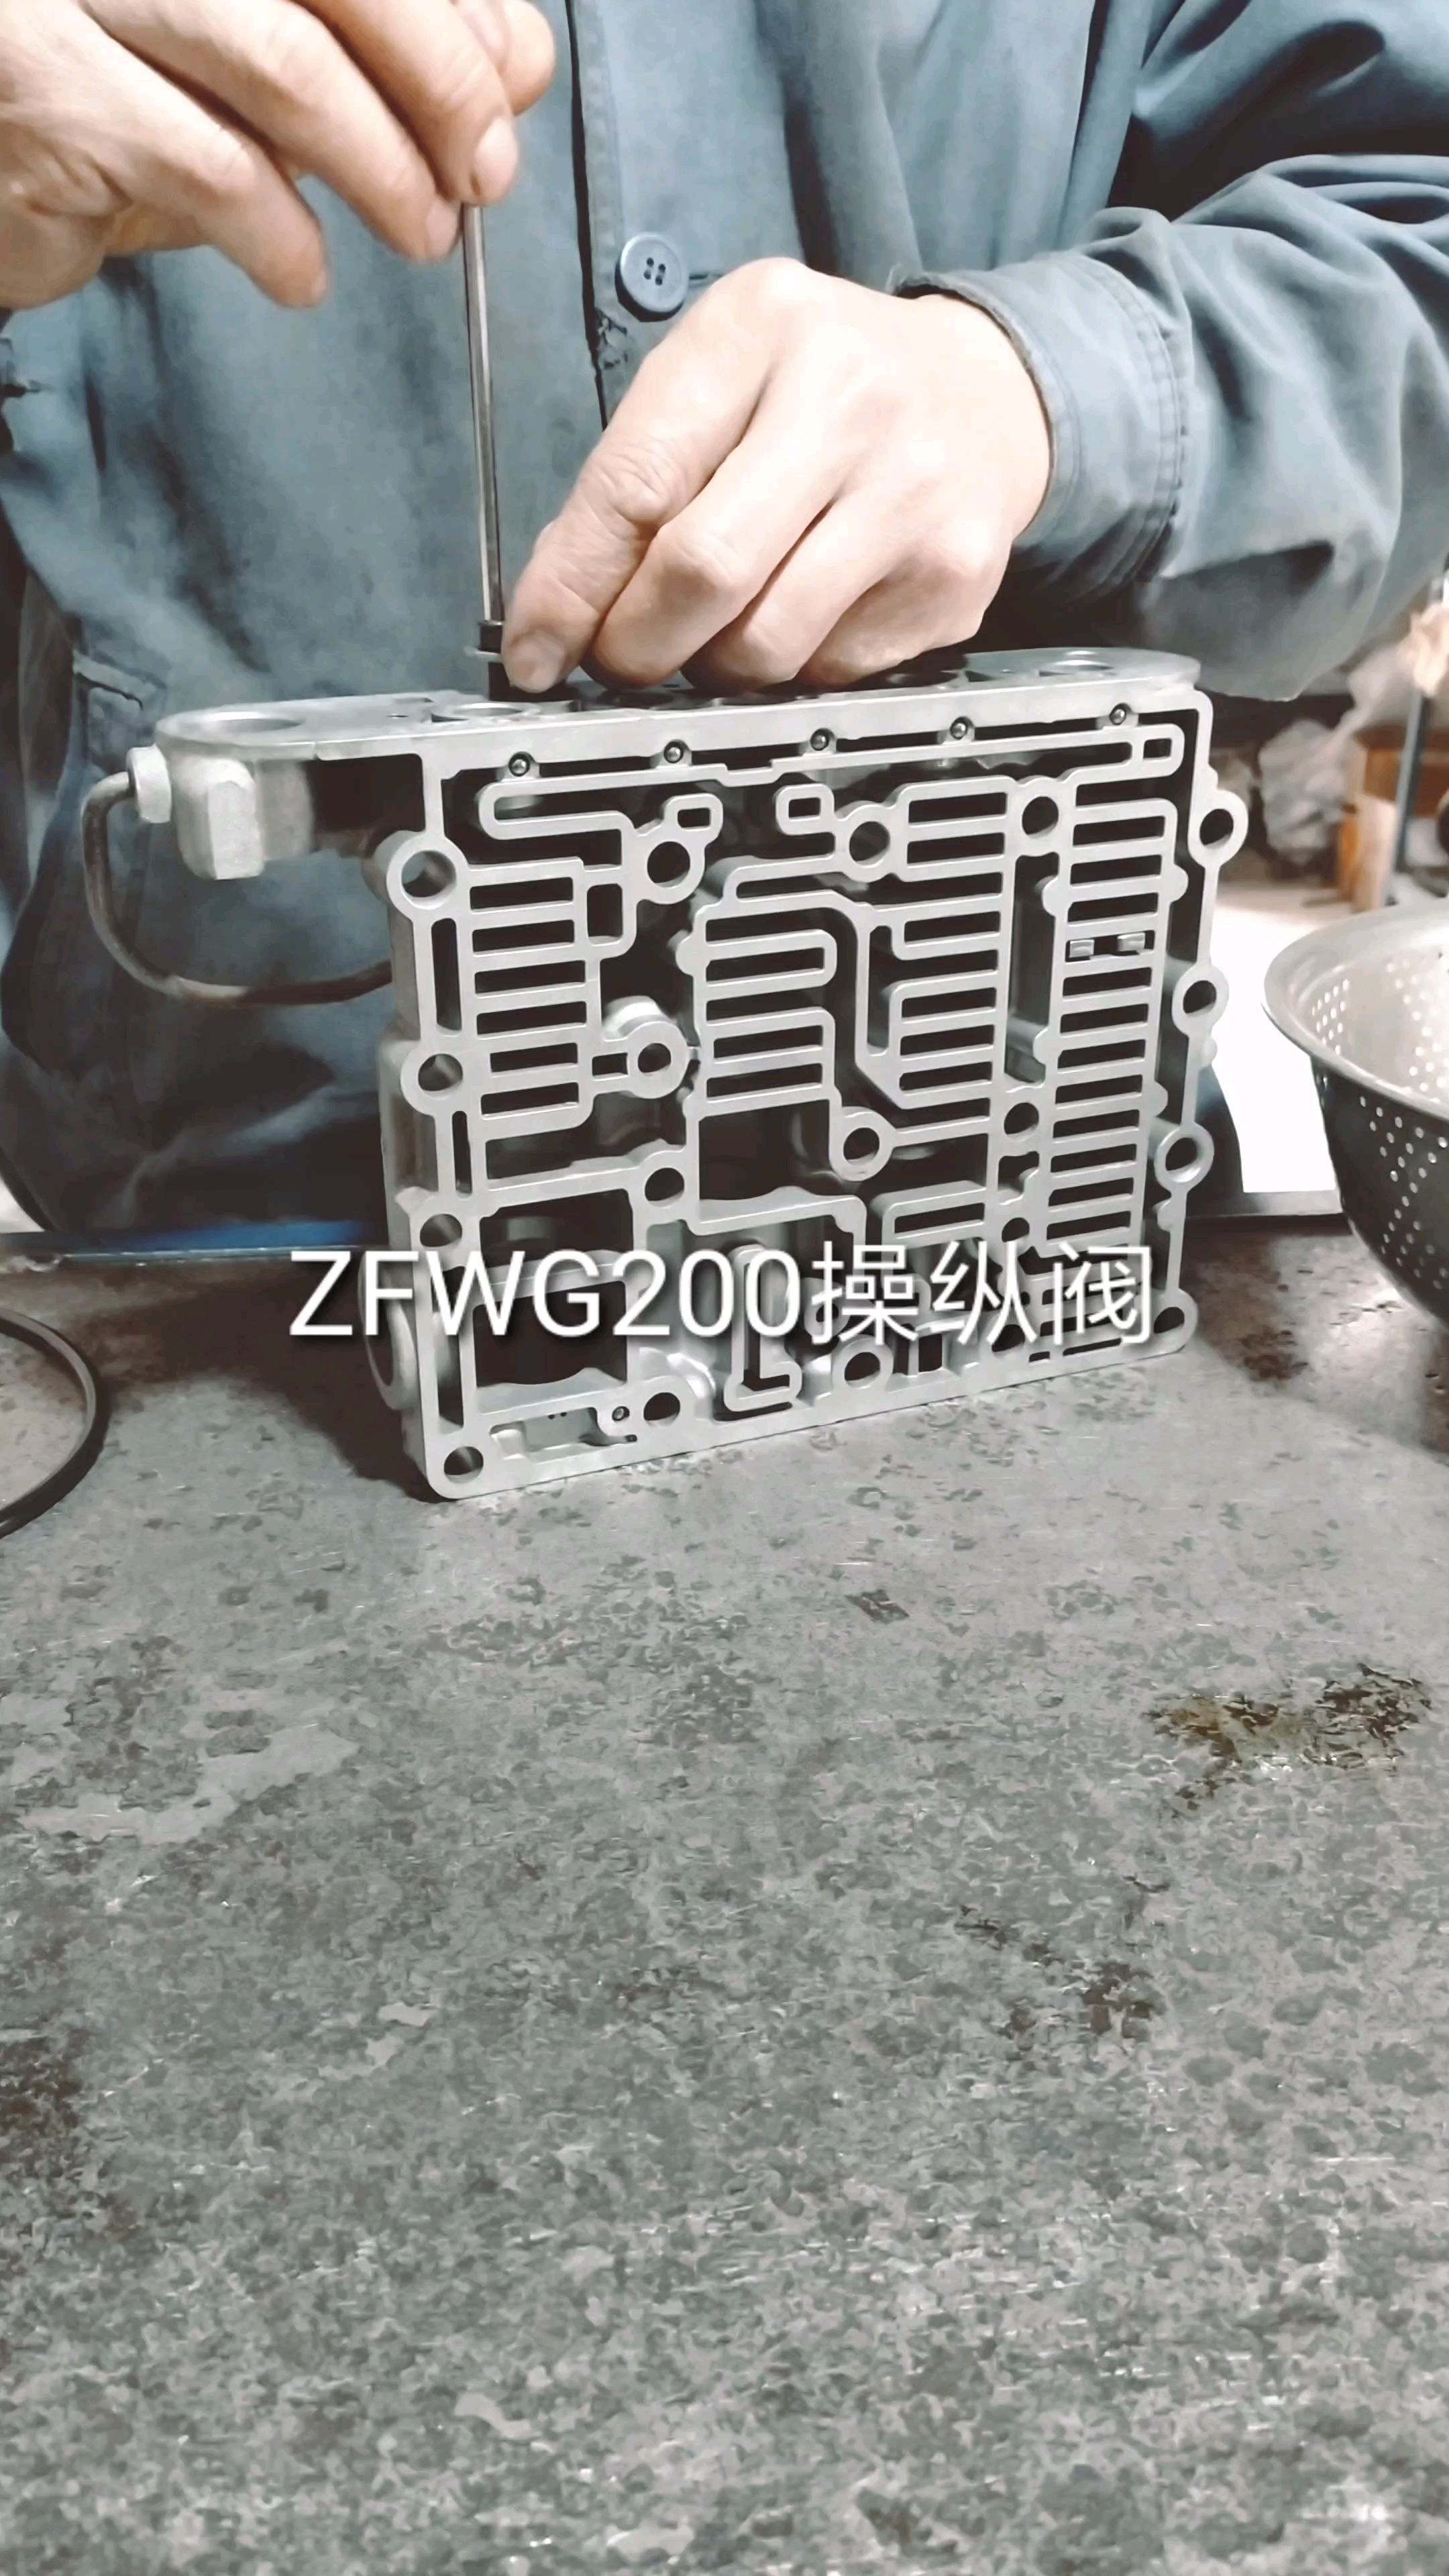 大修一台ZFWG200变速箱。